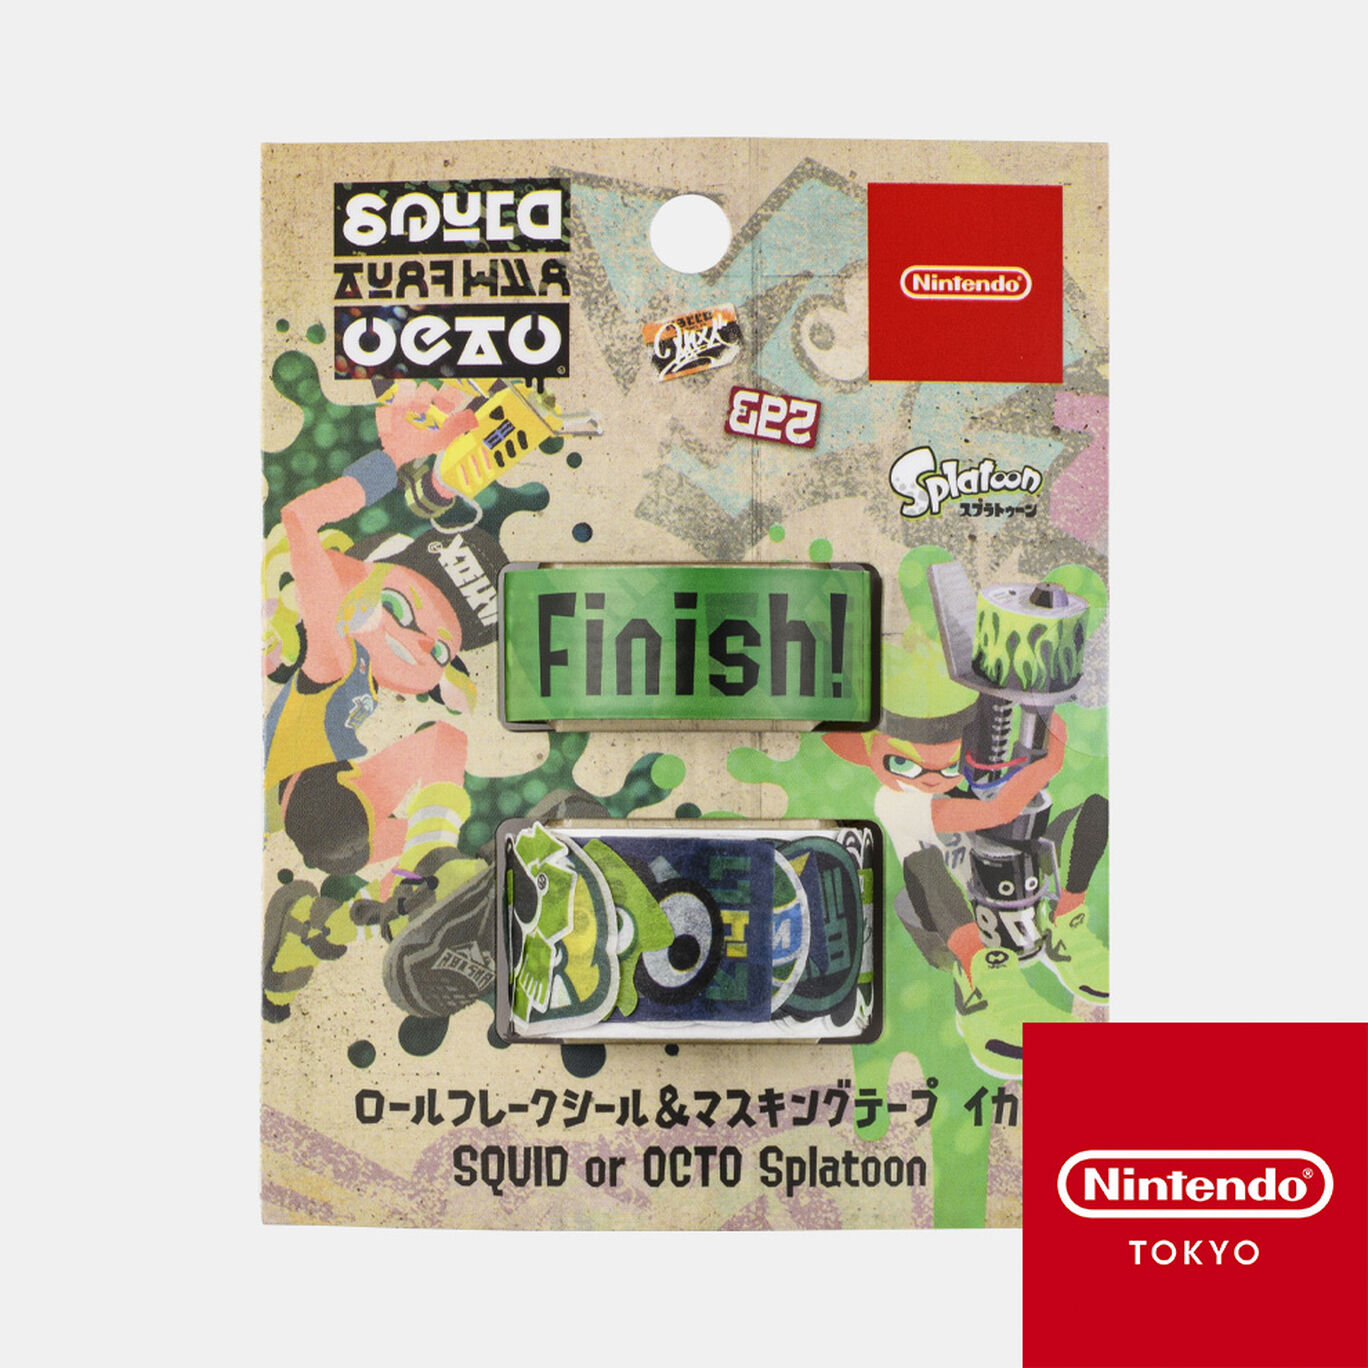 ロールフレークシール マスキングテープ イカ Squid Or Octo Splatoon Nintendo Tokyo取り扱い商品 My Nintendo Store マイニンテンドーストア